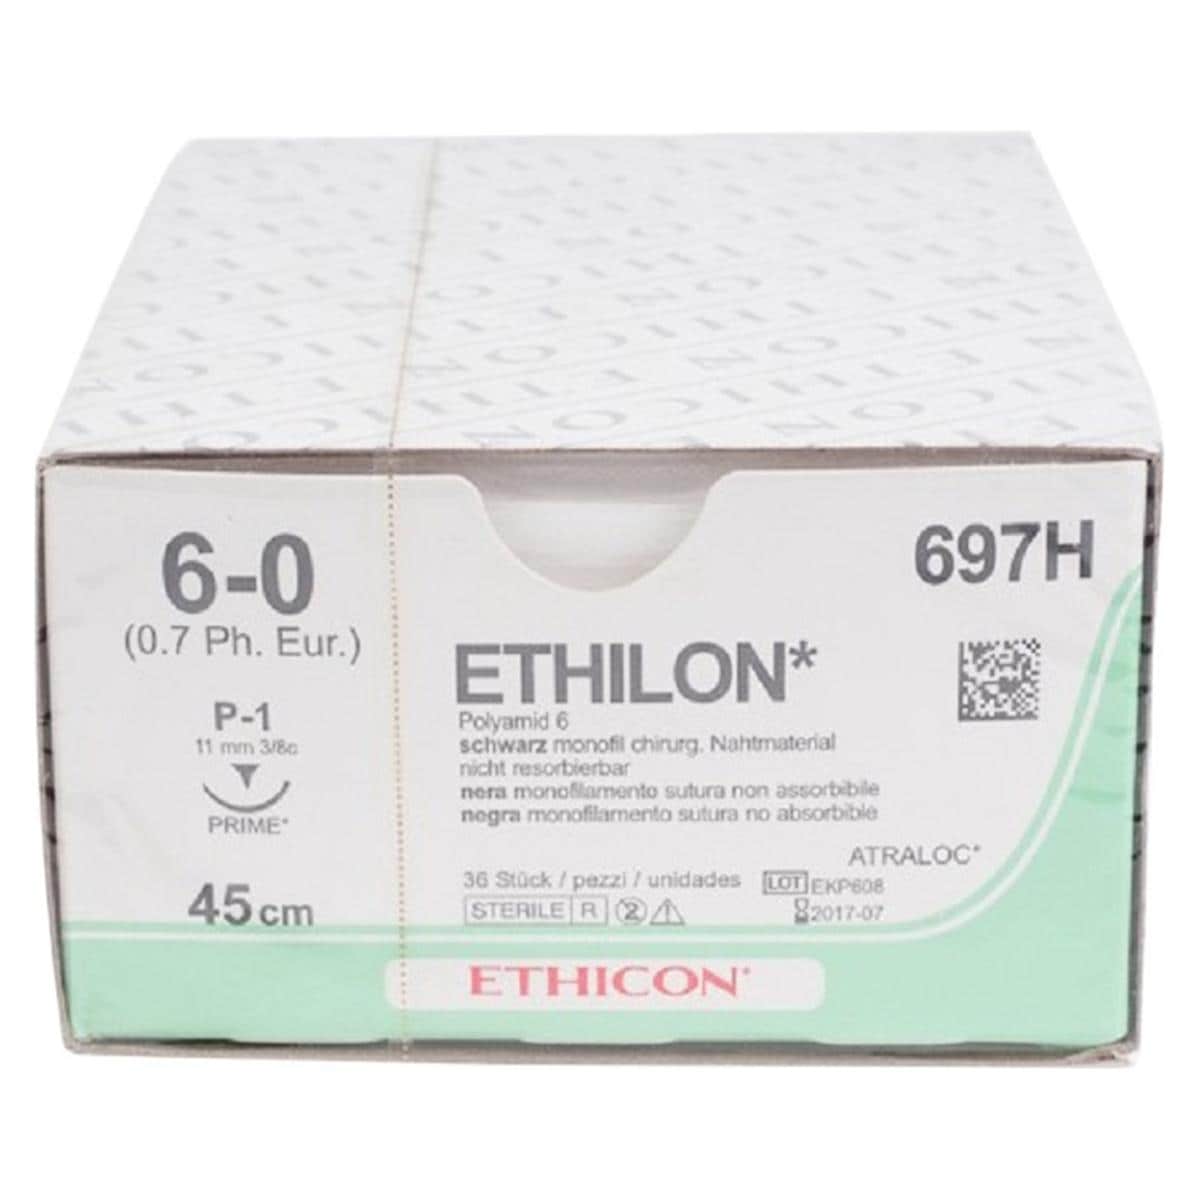 Ethilon - Lengte 45cm, 36 stuks 6-0, naald P-1 - 697H